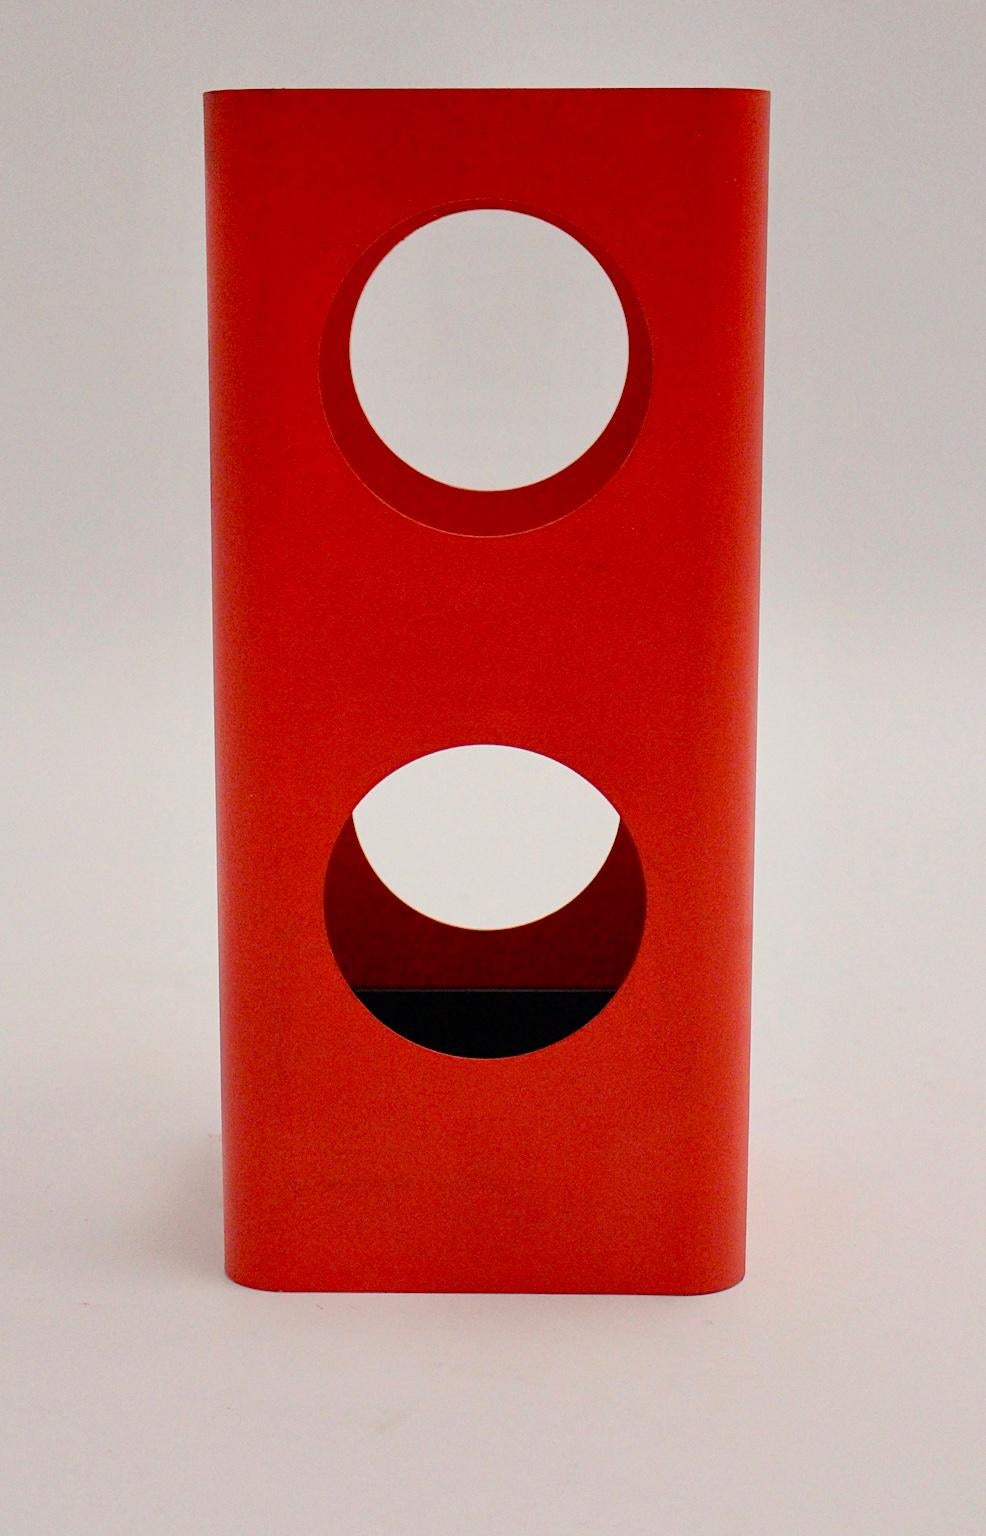 Ce porte-parapluies vintage en métal rouge de l'ère spatiale a été conçu et fabriqué vers 1970 en Autriche.
Le porte-parapluies est décoré de trous ronds et a été laqué en rouge.
En outre, le porte-parapluie rouge est doté d'un bac de récupération